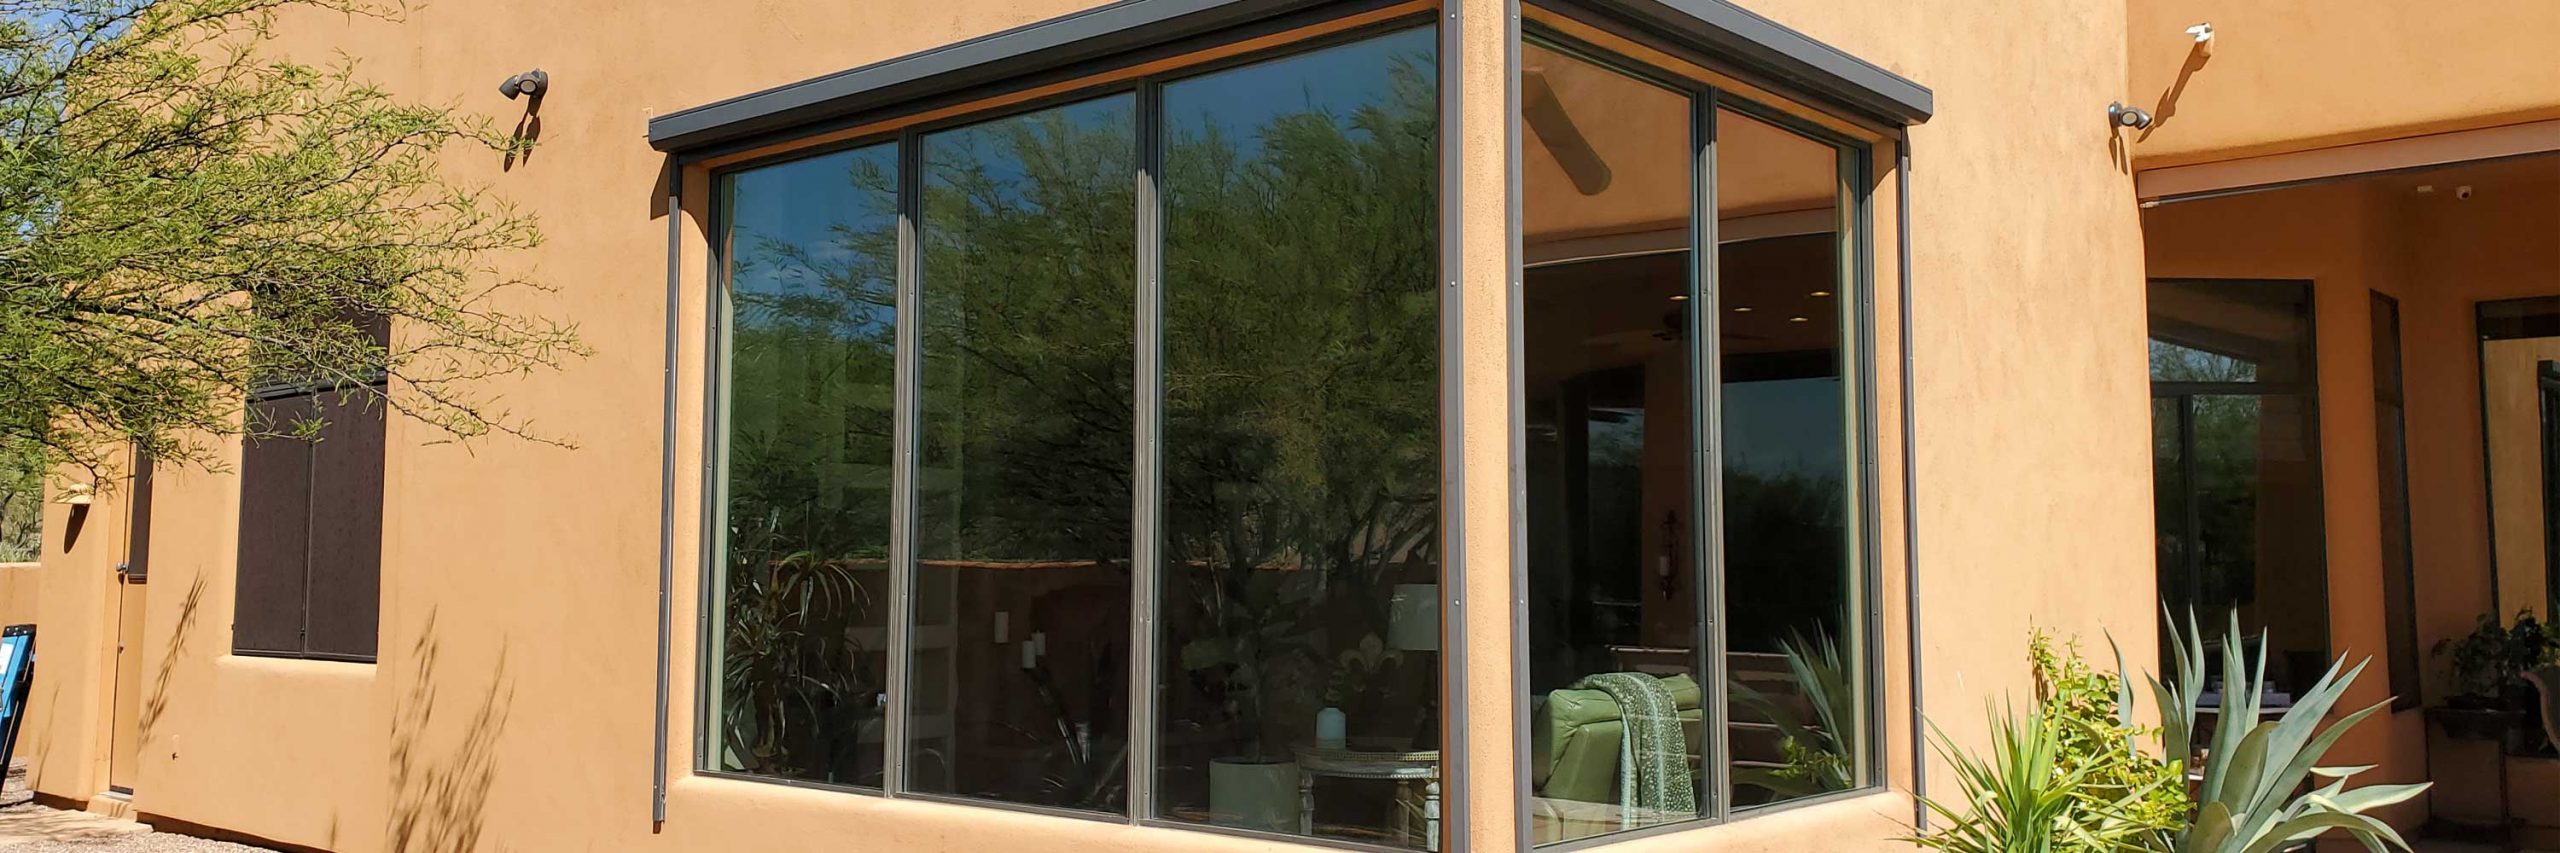 Aluminum Windows Glass Upgrade in Phoenix AZ